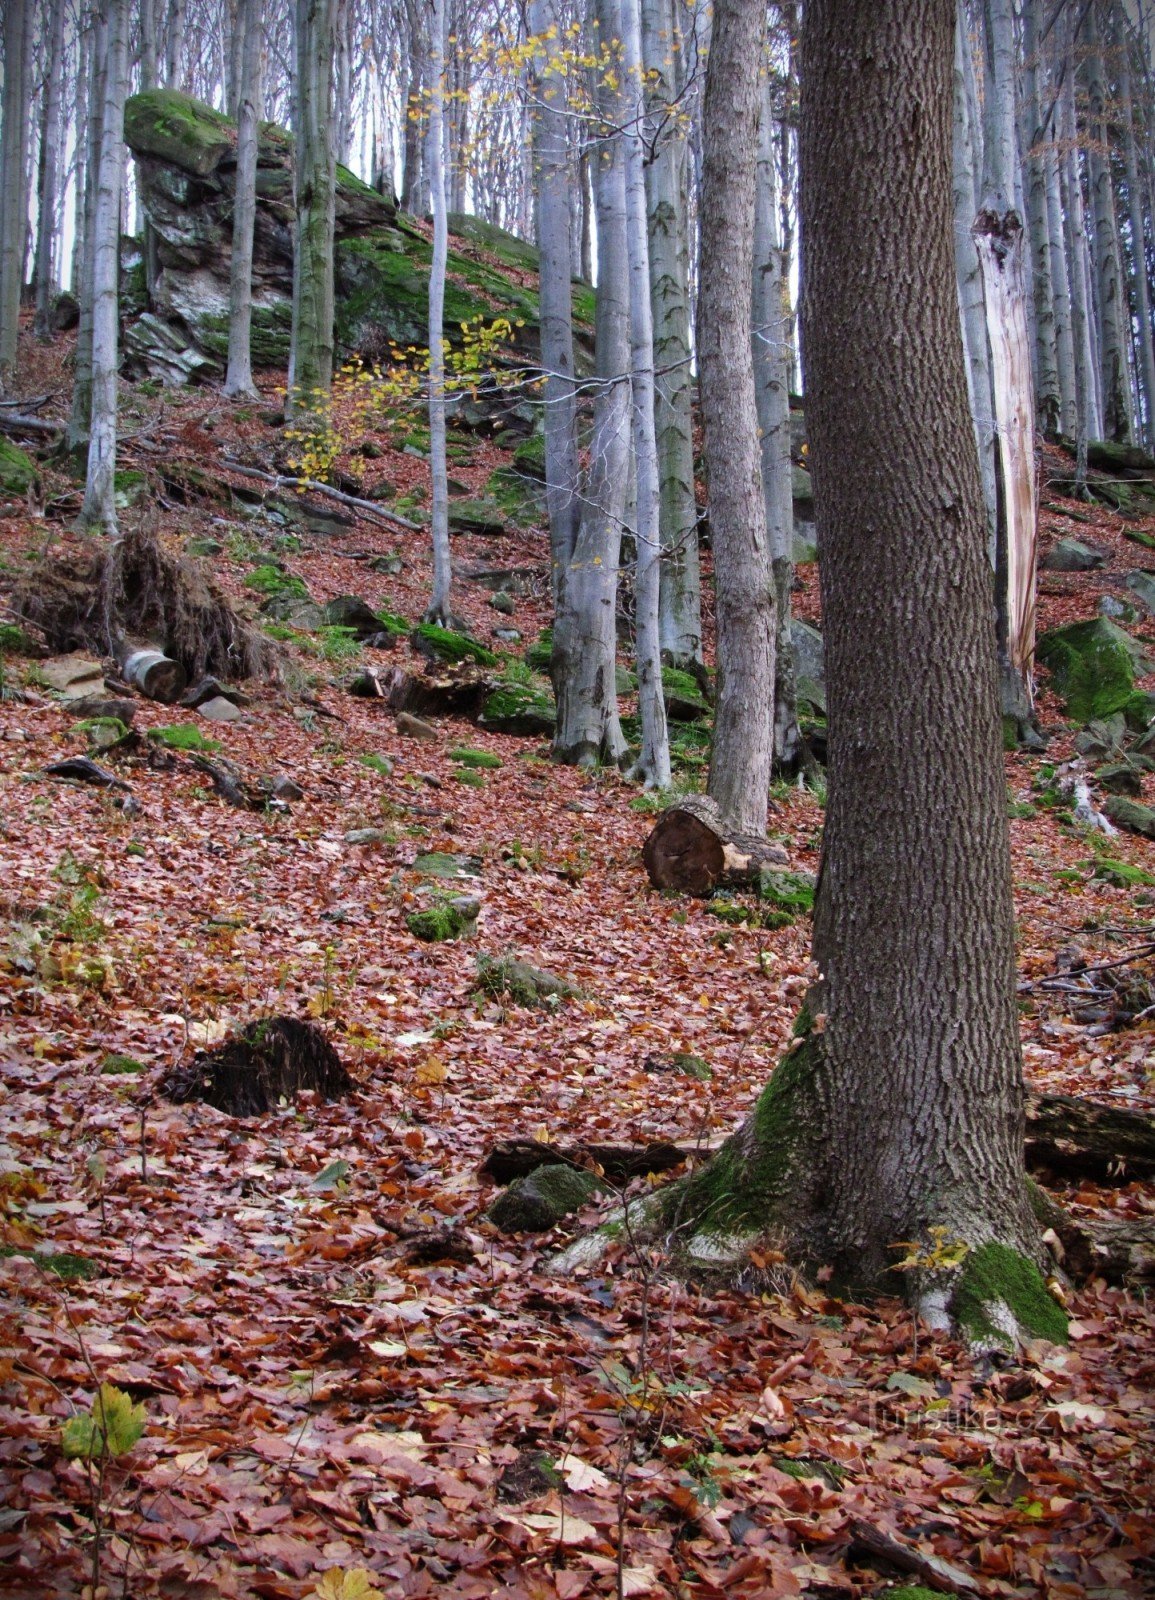 Čerňava - đá phía trên đường rừng